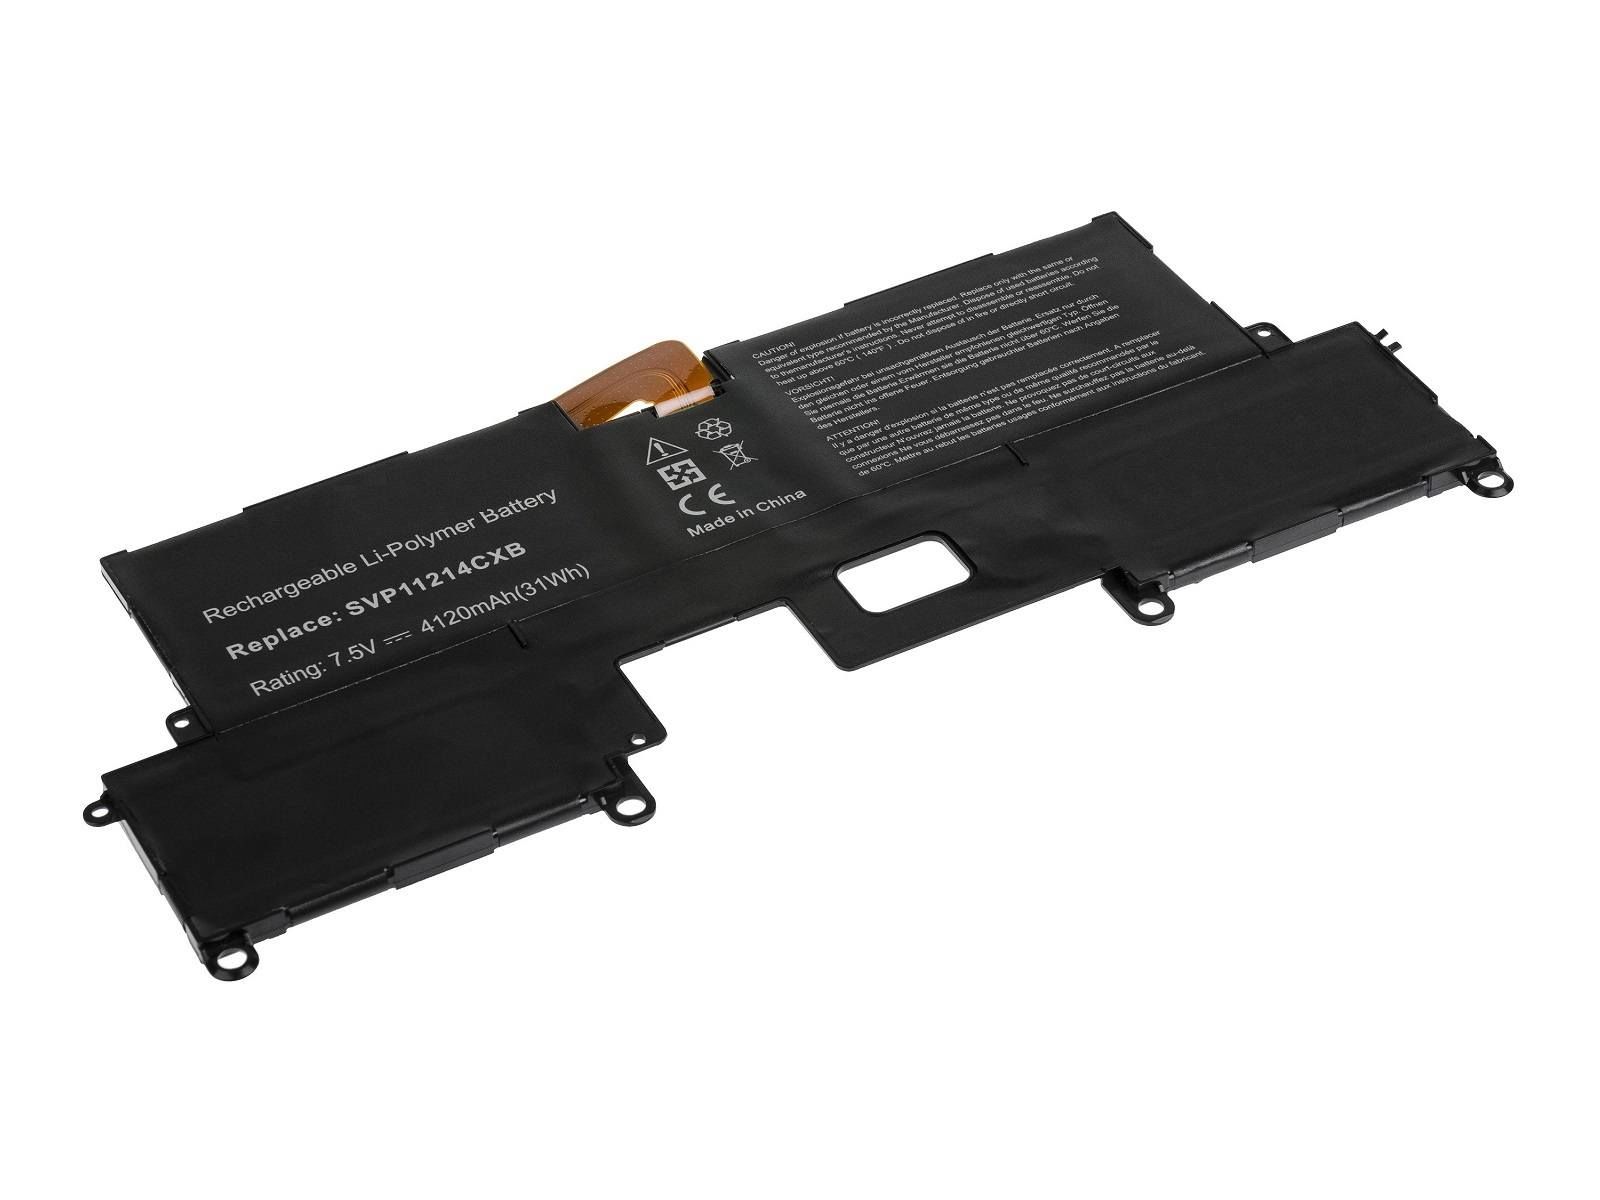 RETRO Sony Vaio Pro 11 Serisi, SVP11, VGP-BPS37 Notebook Bataryası